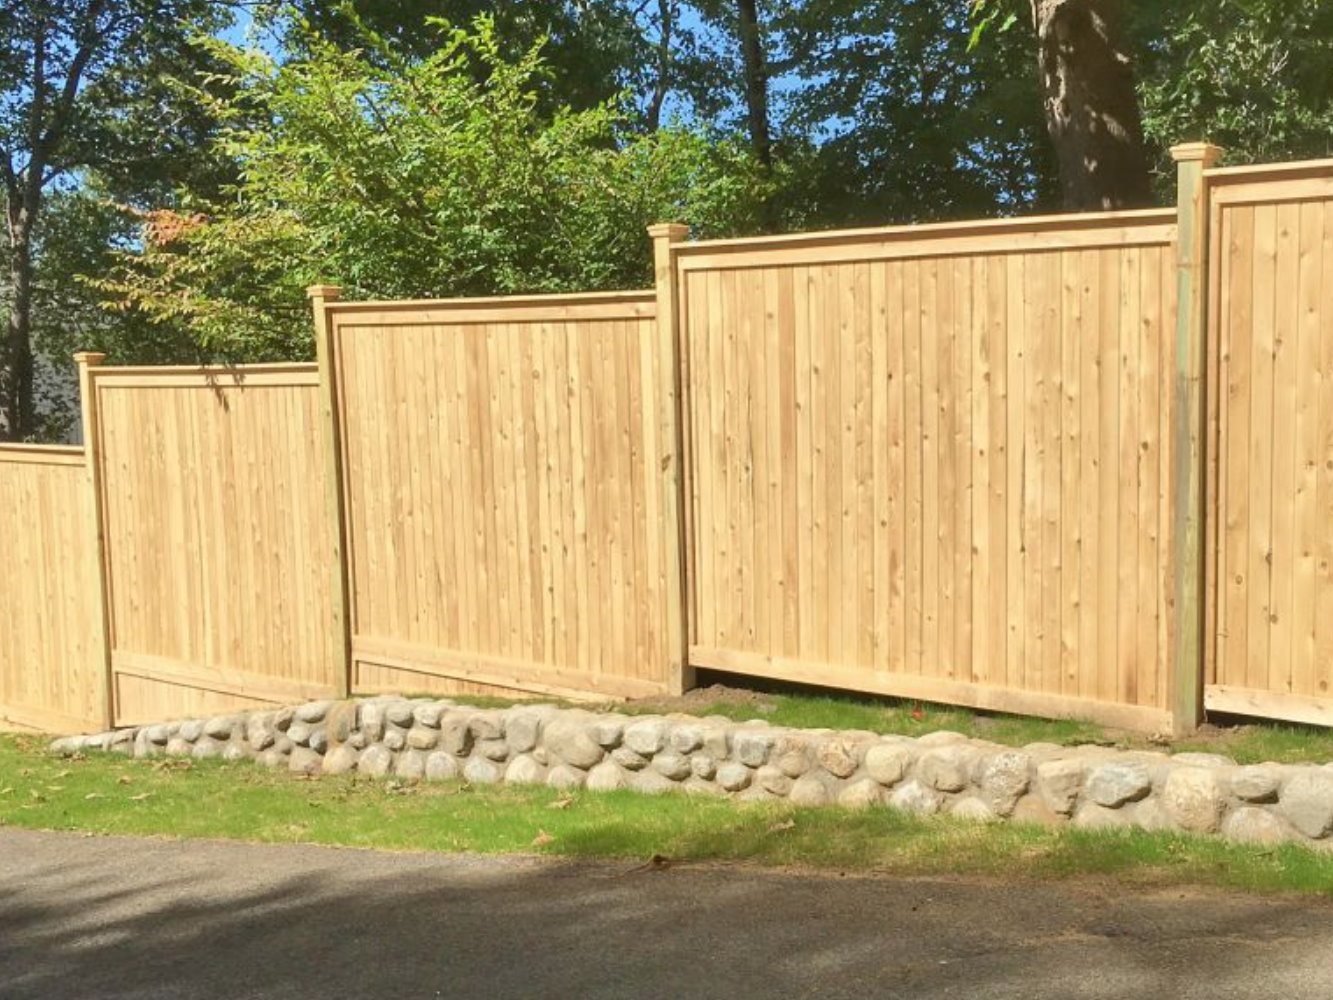 Mount Kisco NY wood privacy fence